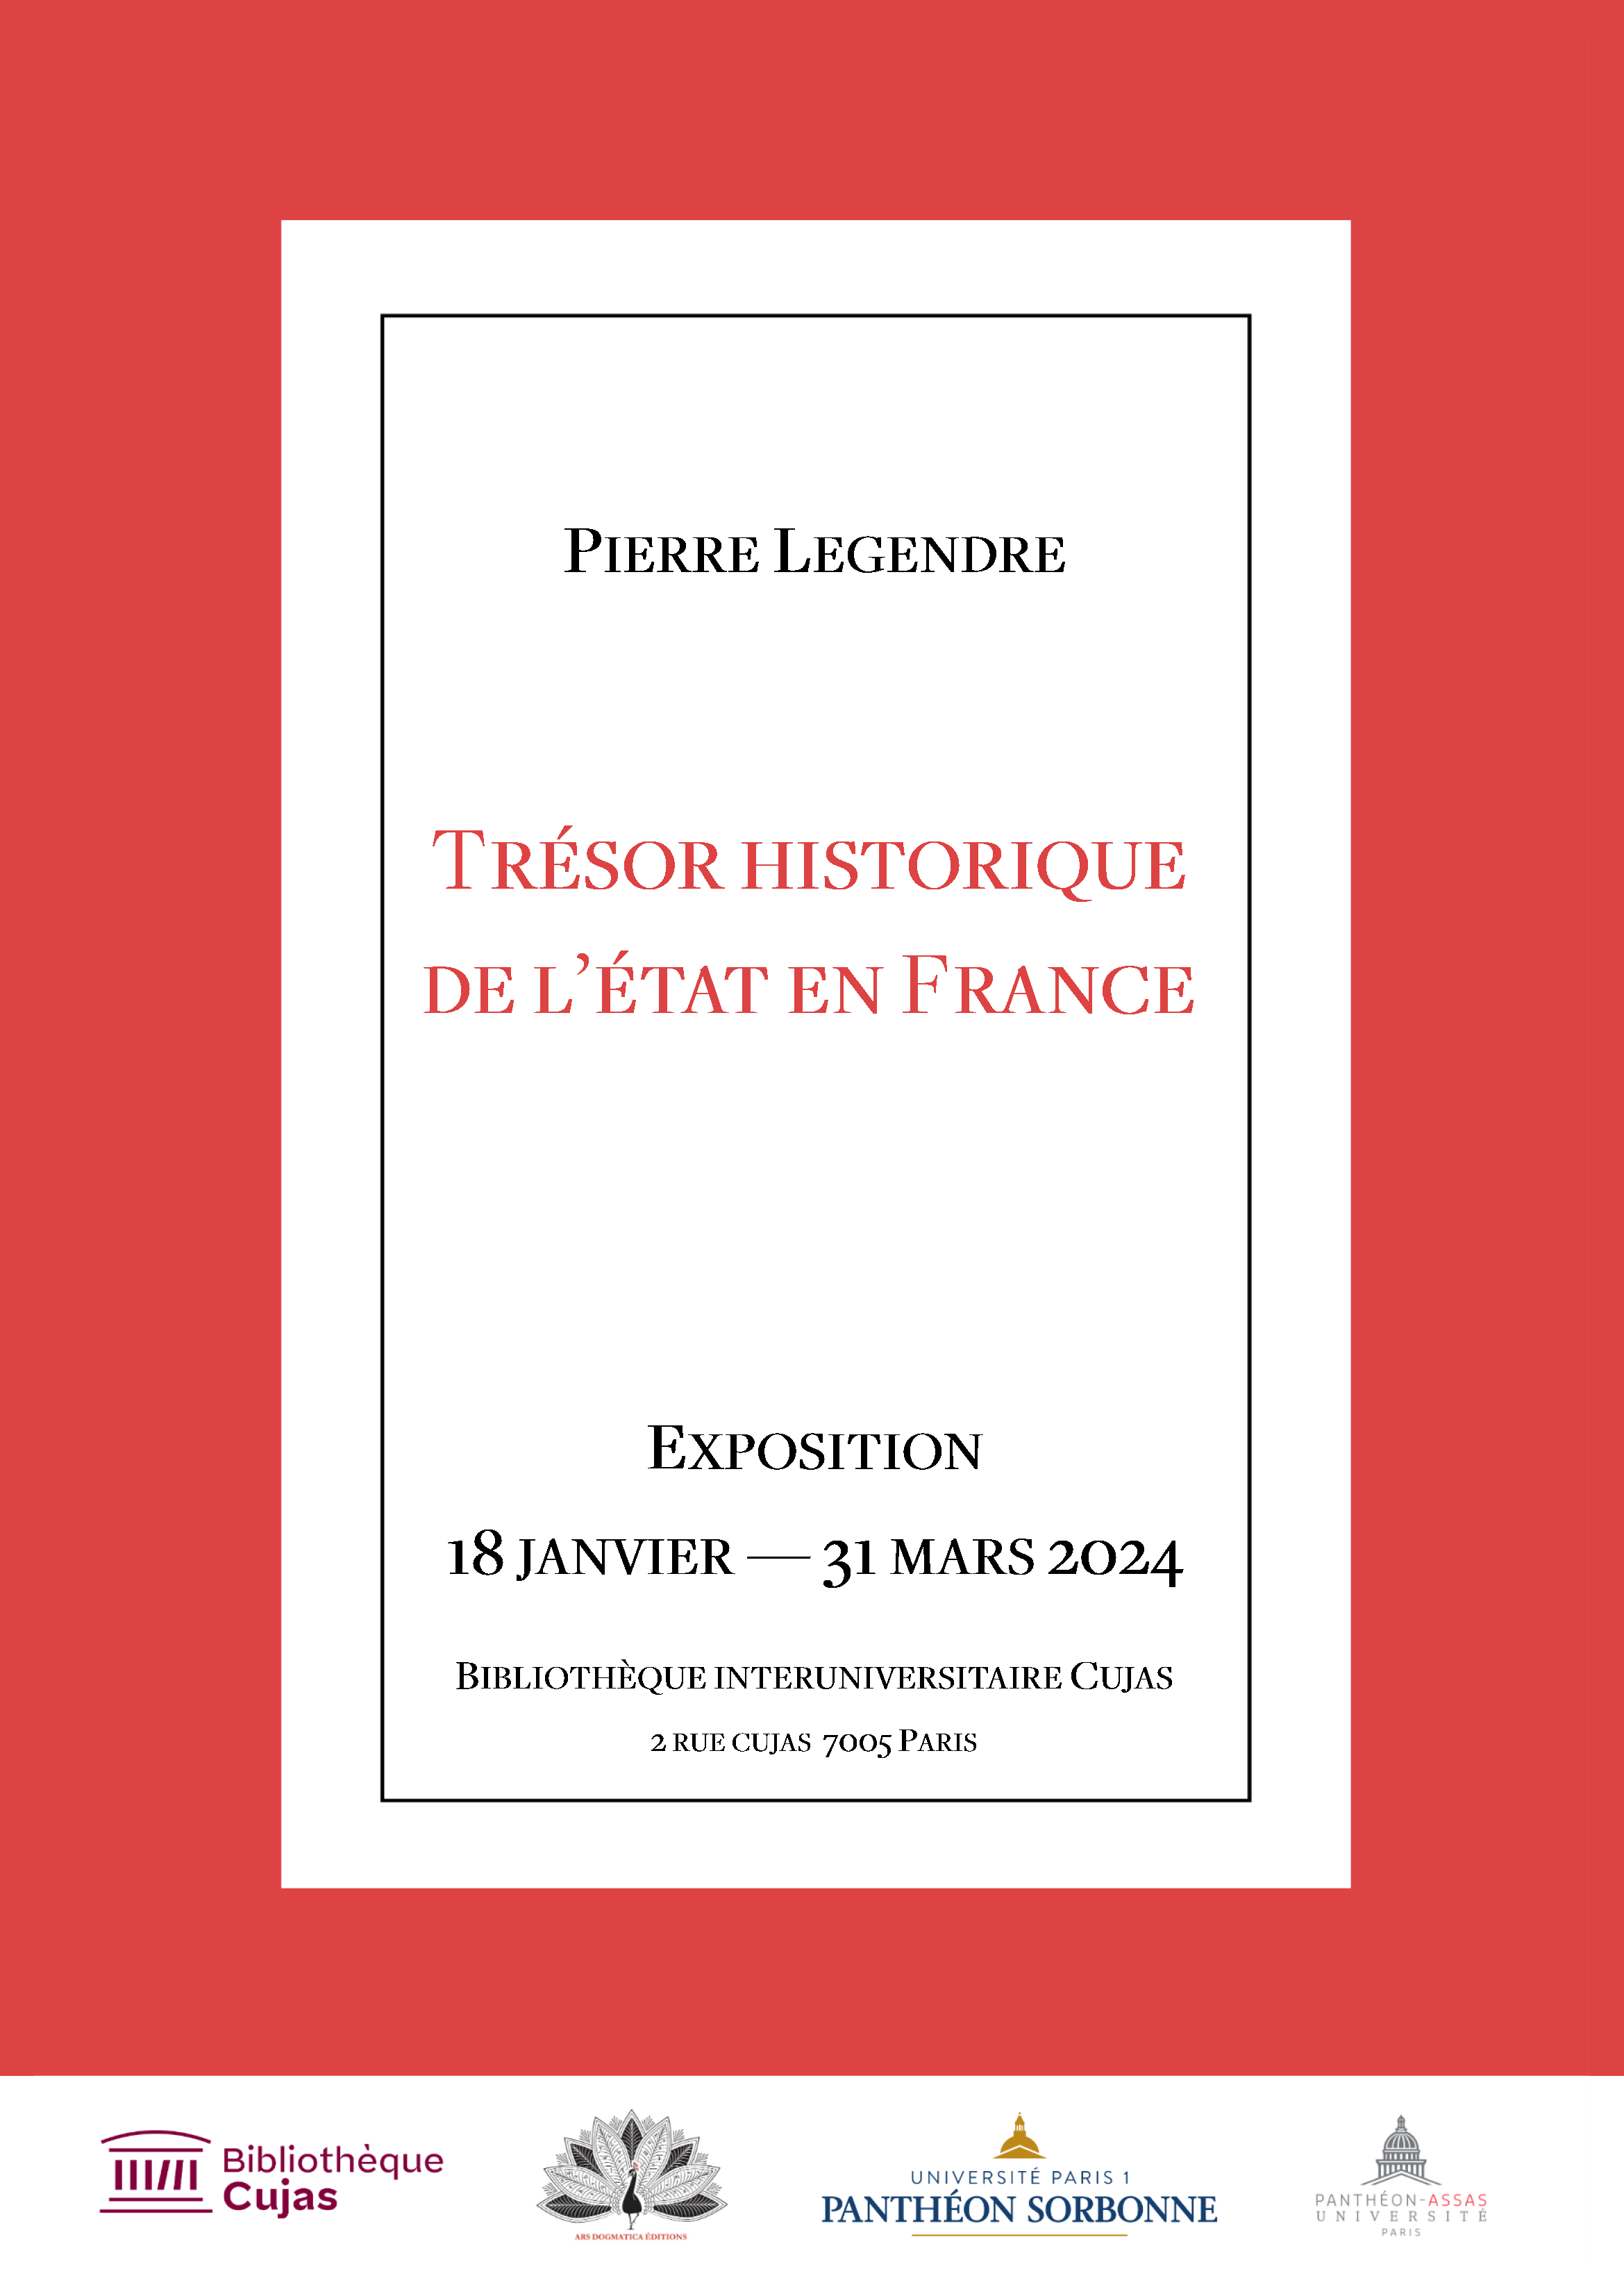 Affiche de l’exposition Pierre Legendre, Trésor historique de l'état en France. Du 18 janvier au 31 mars 2024 à la bibliothèque interuniversitaire Cujas